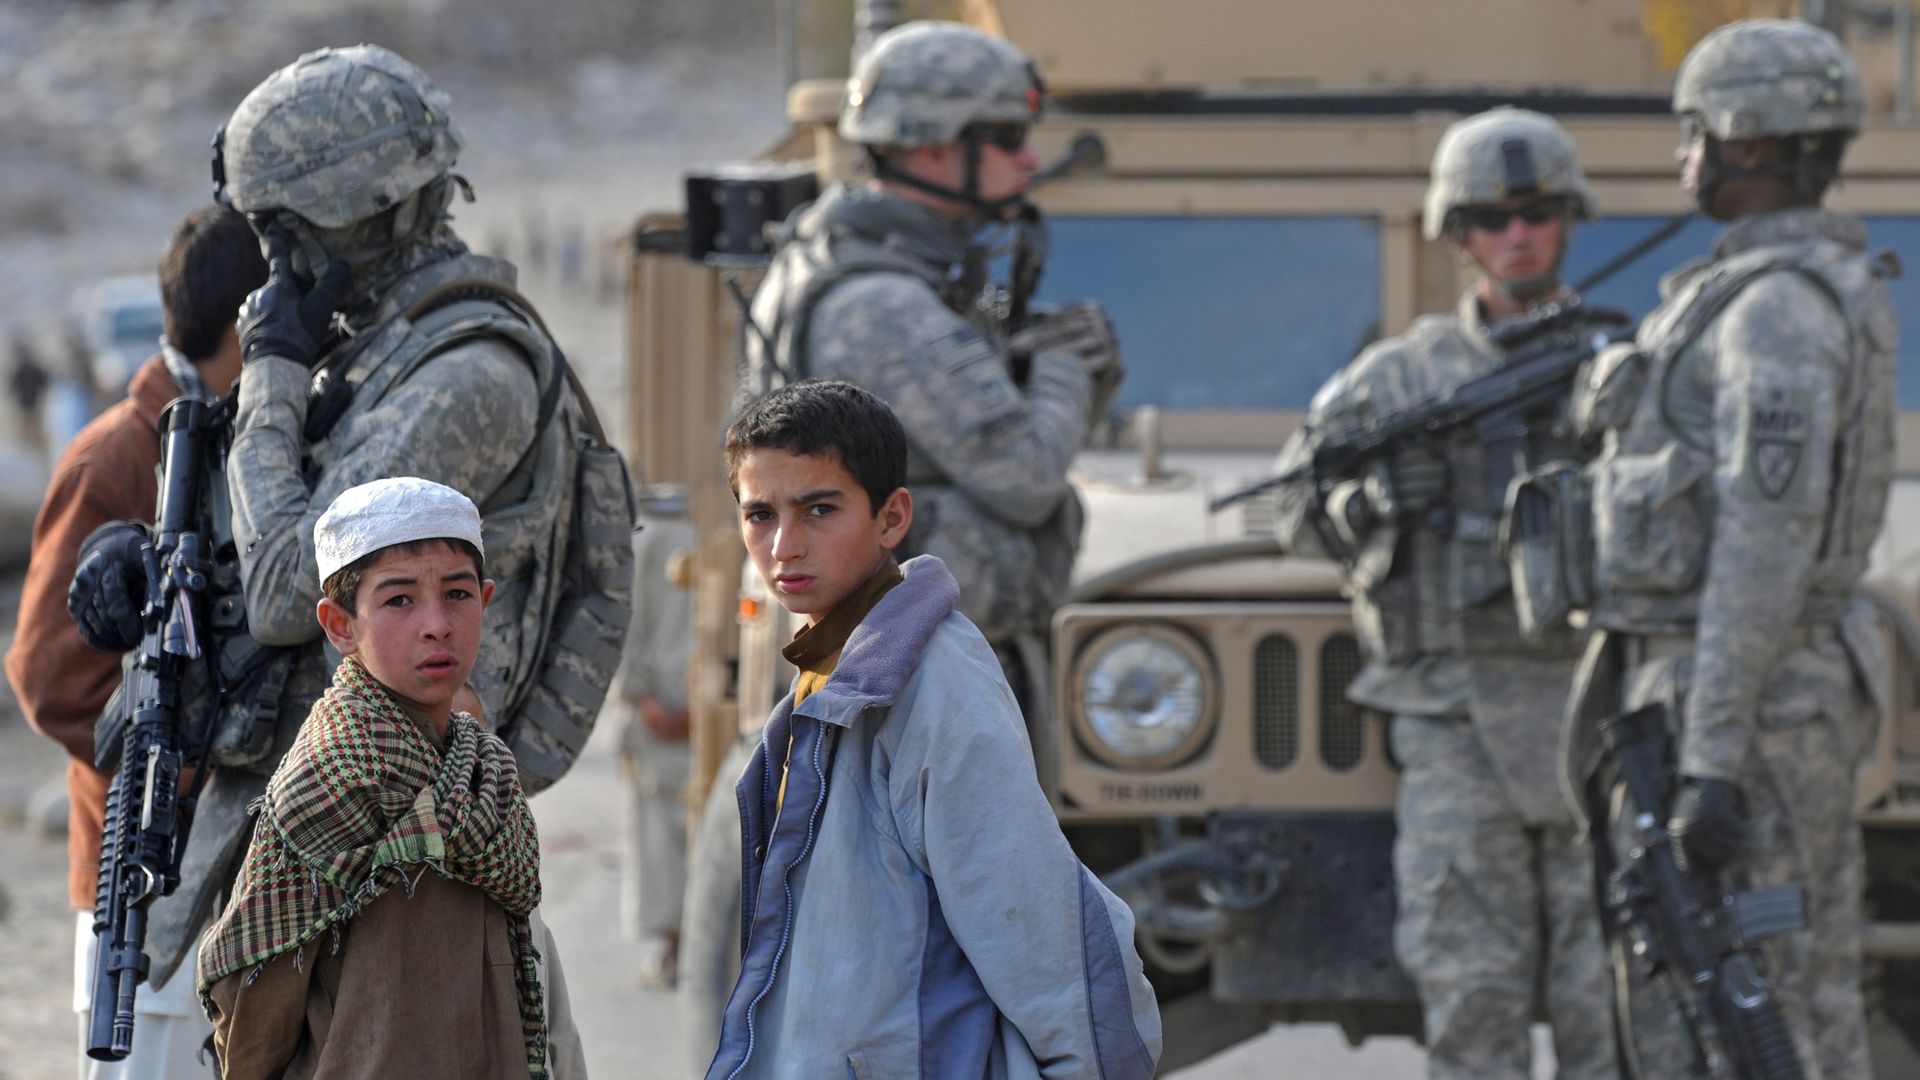 Soldiers standing next to children.